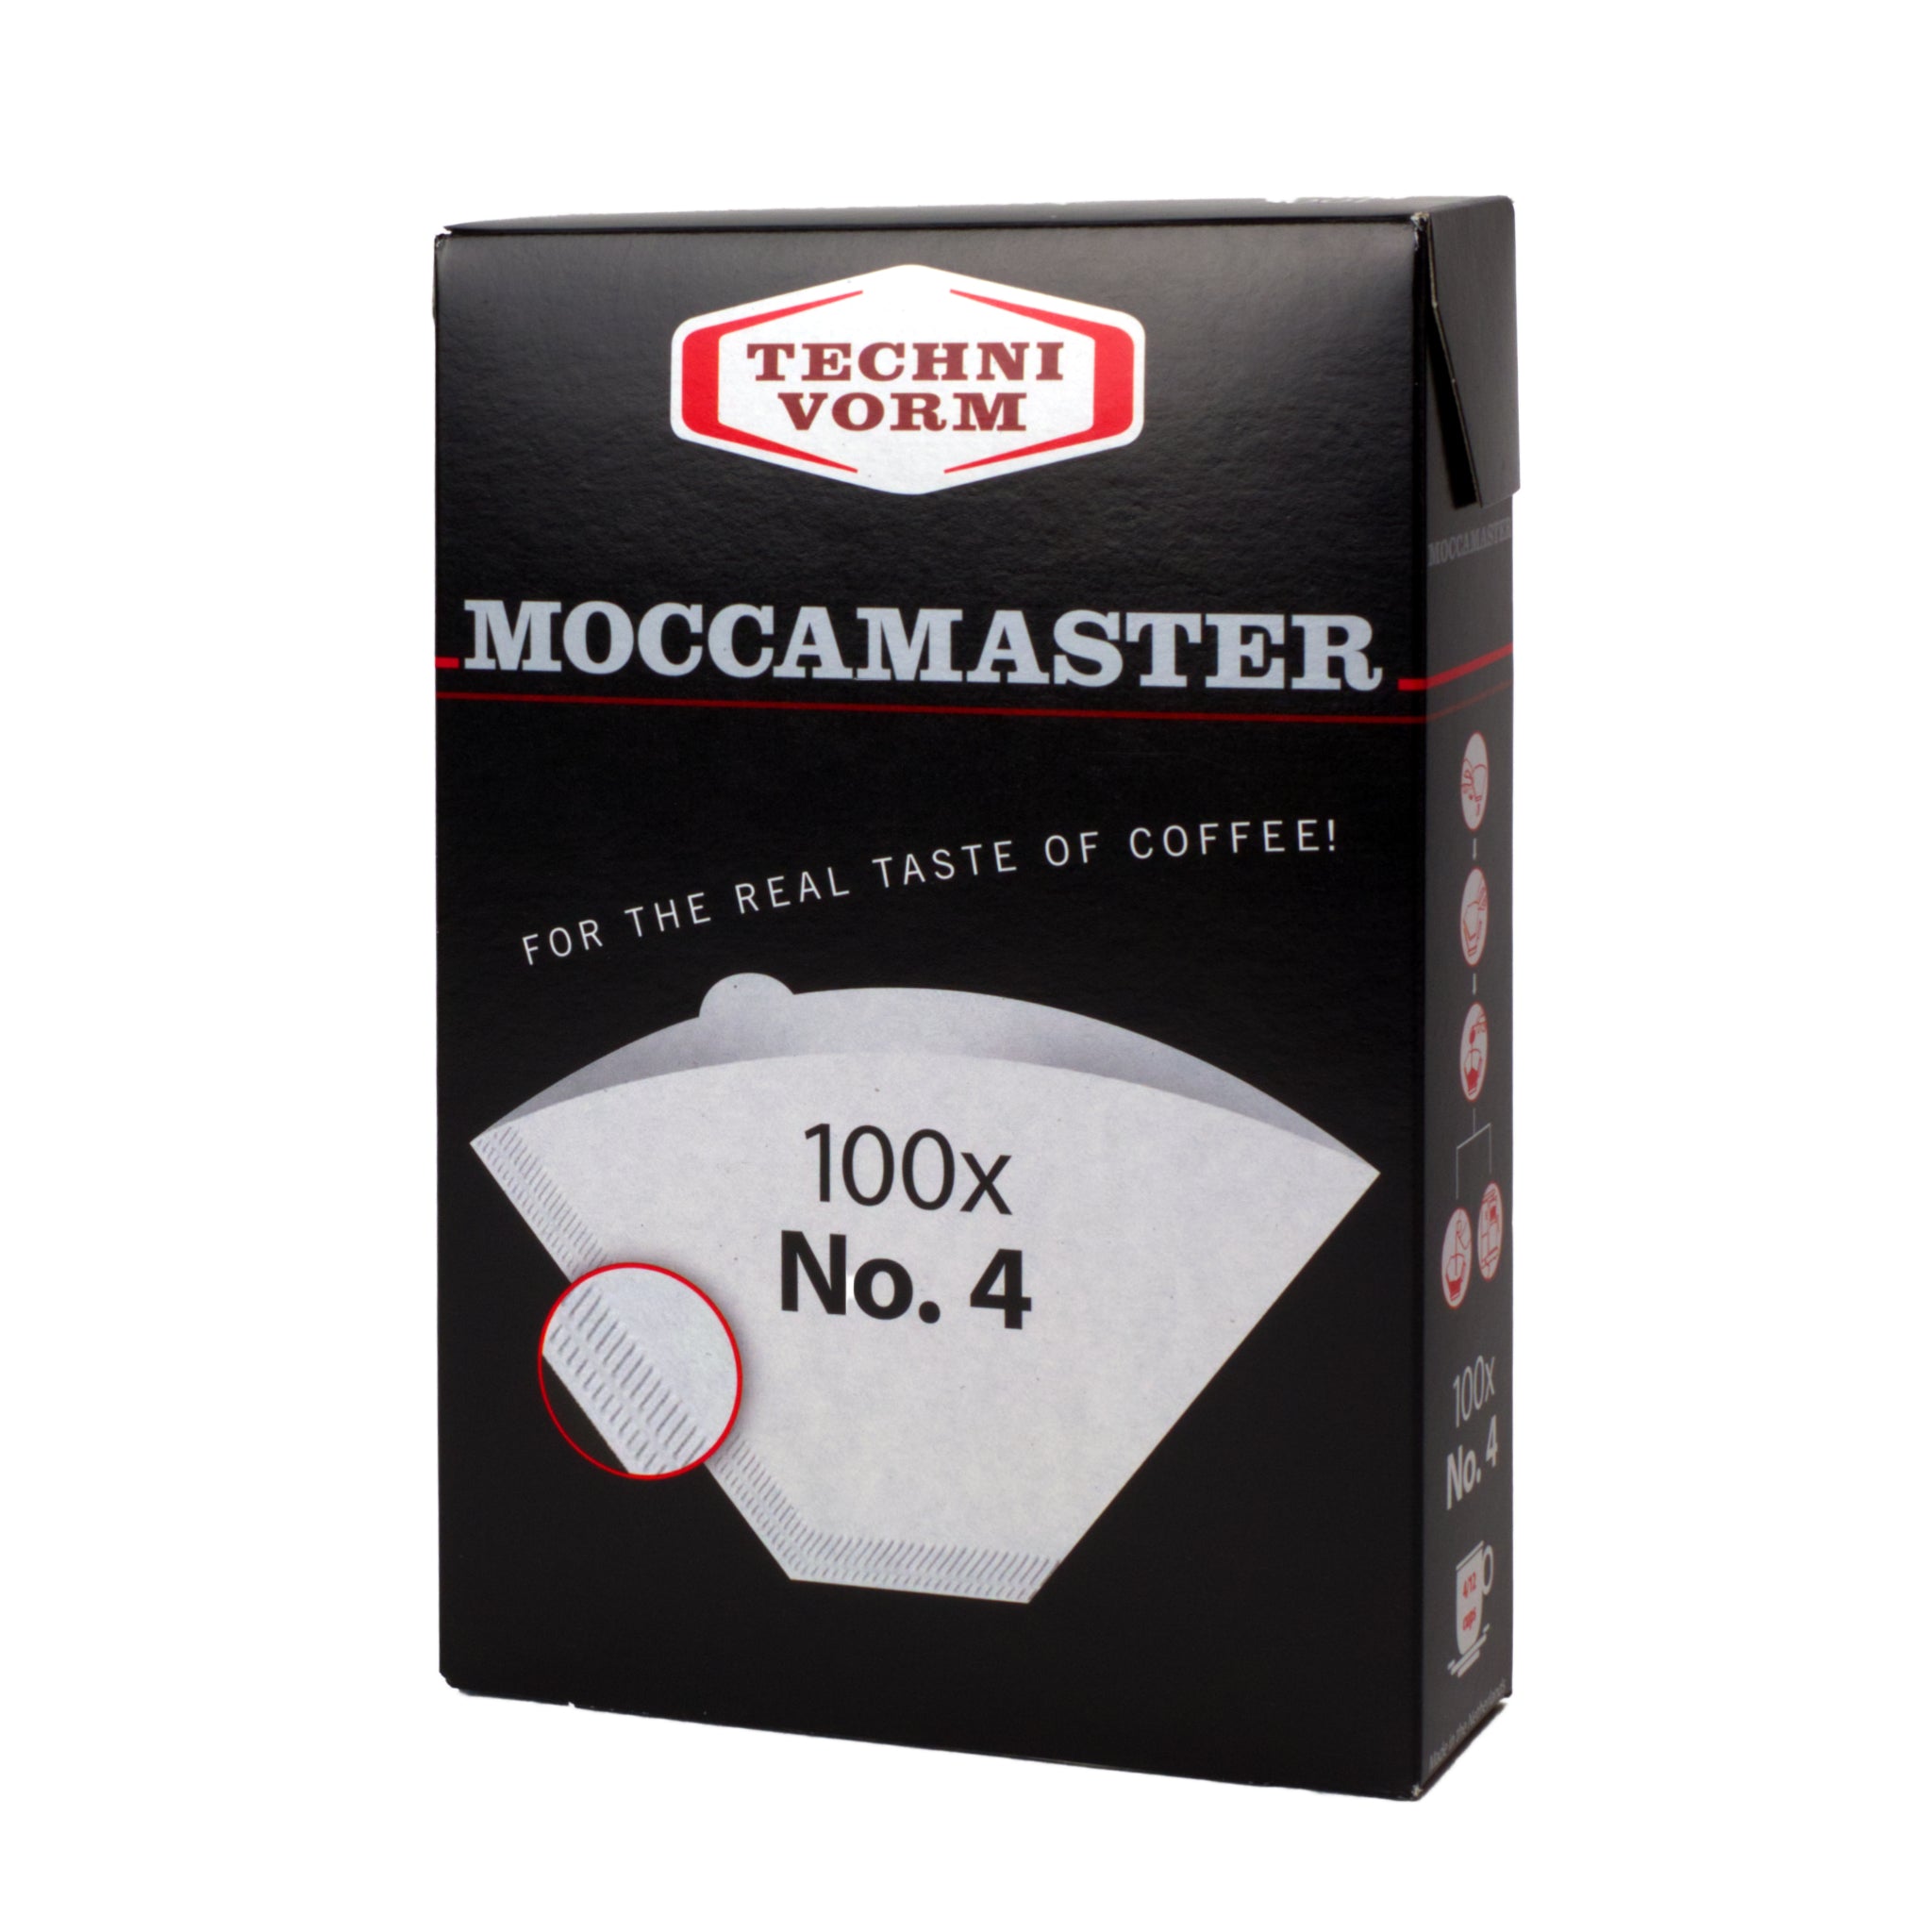 Produktverpackung für Technivorm Moccamaster Filter No. 4 (100 Stk). Schwarze Verpackung mit grauer Schrift "For the real taste of coffee!"